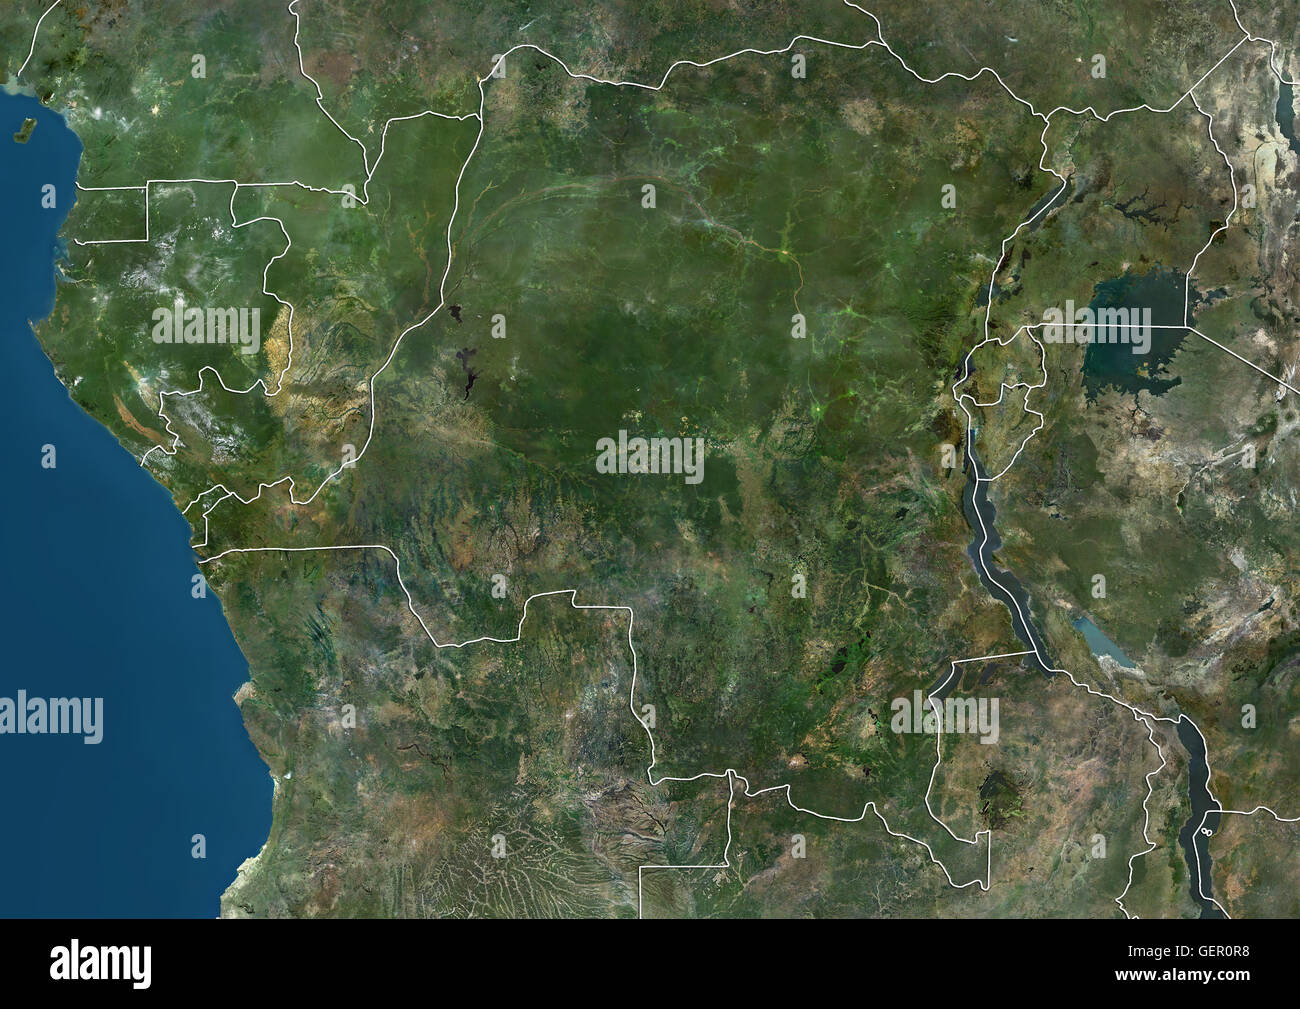 Vue Satellite de l'Afrique centrale (avec des frontières) montrant la Guinée équatoriale, Gabon, République du Congo, République démocratique du Congo, Burundi, Rwanda et Ouganda. Cette image a été compilé à partir de données acquises par les satellites Landsat. Banque D'Images